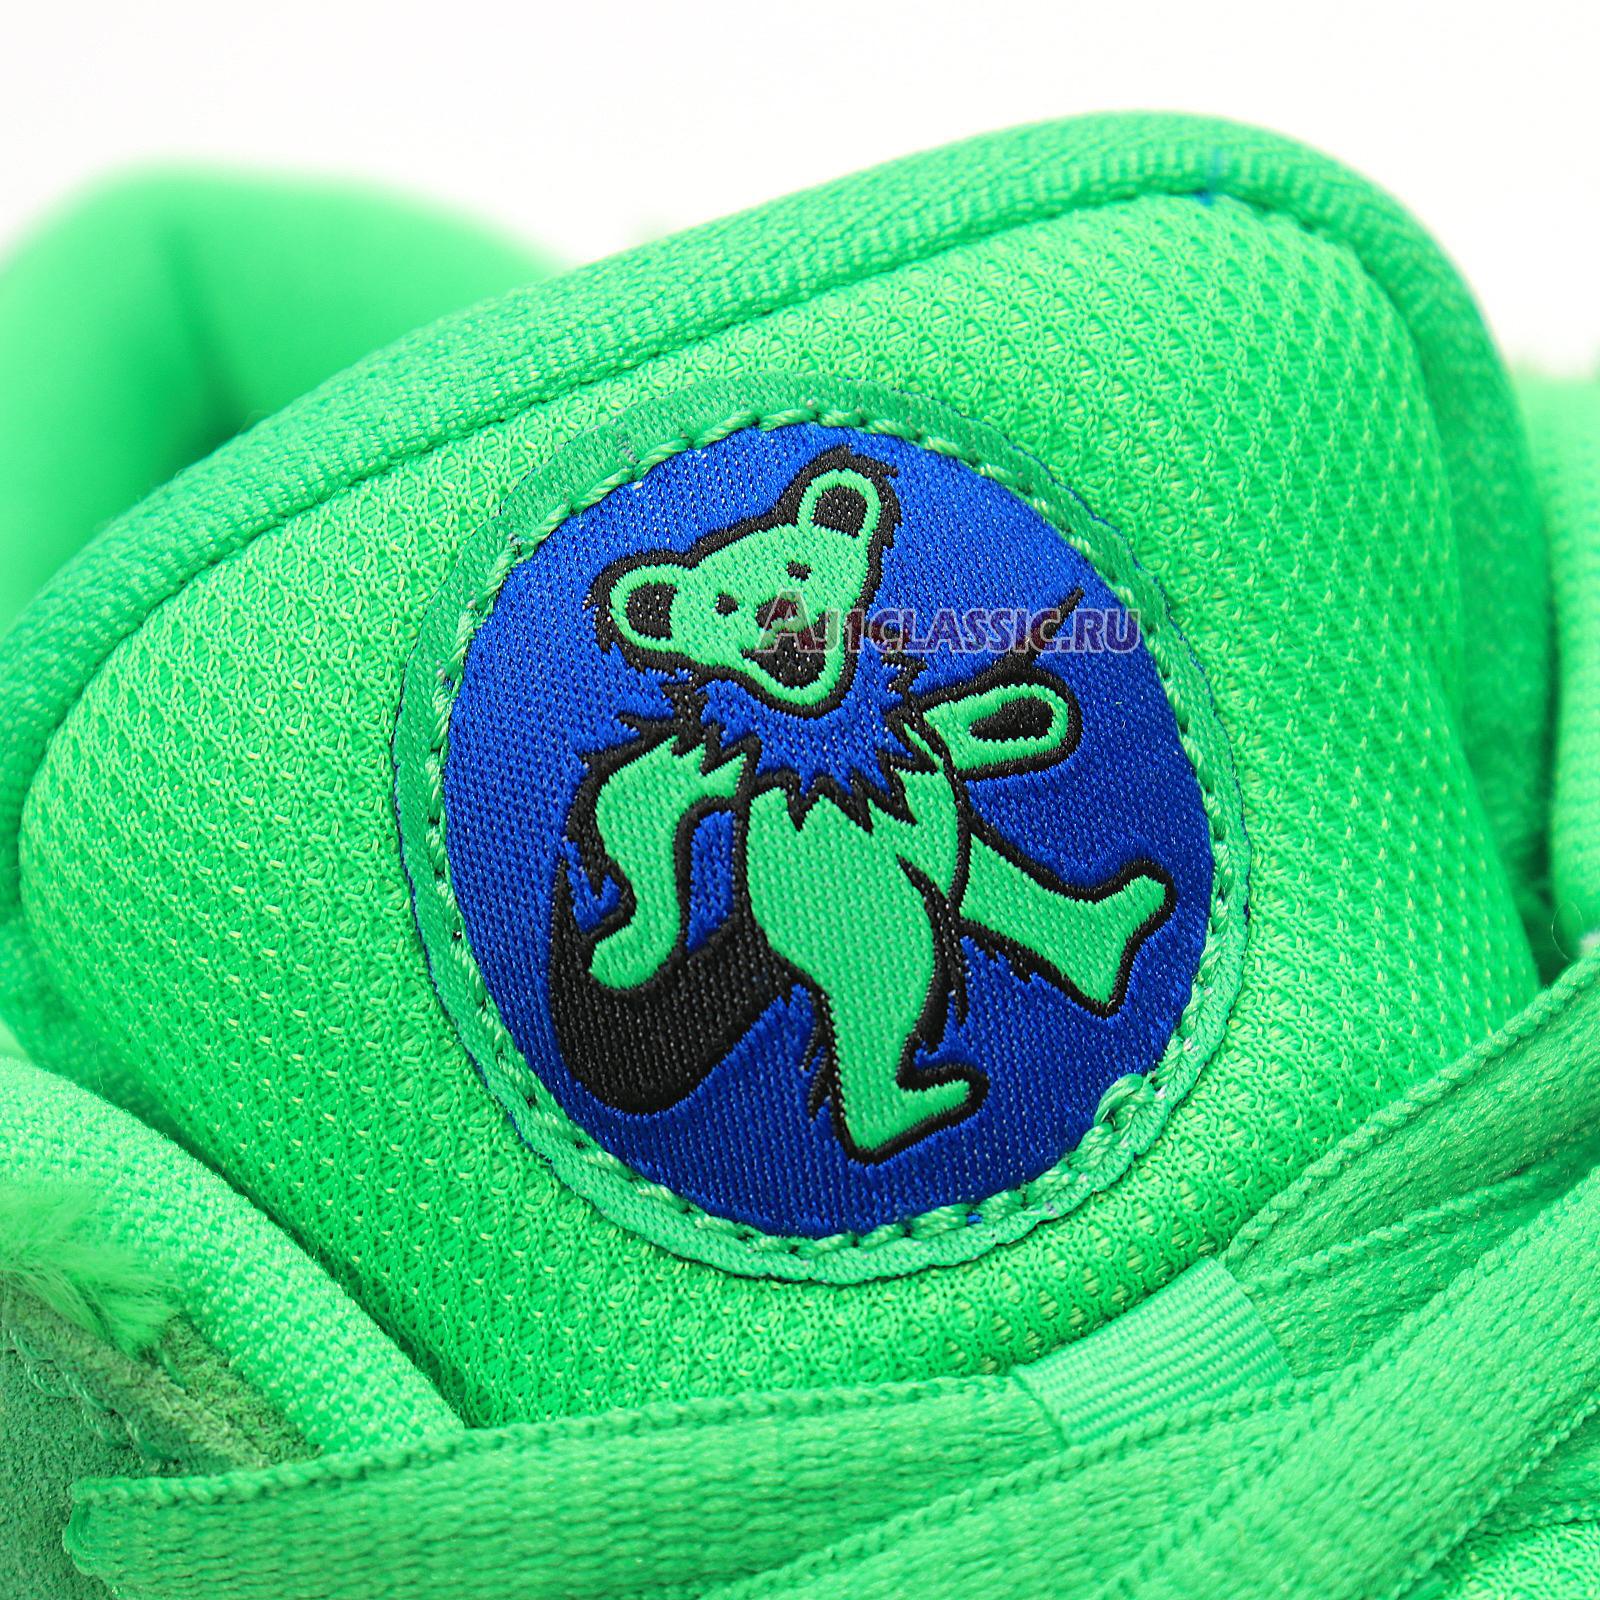 Nike Grateful Dead x Dunk Low SB "Green Bear" CJ5378-300